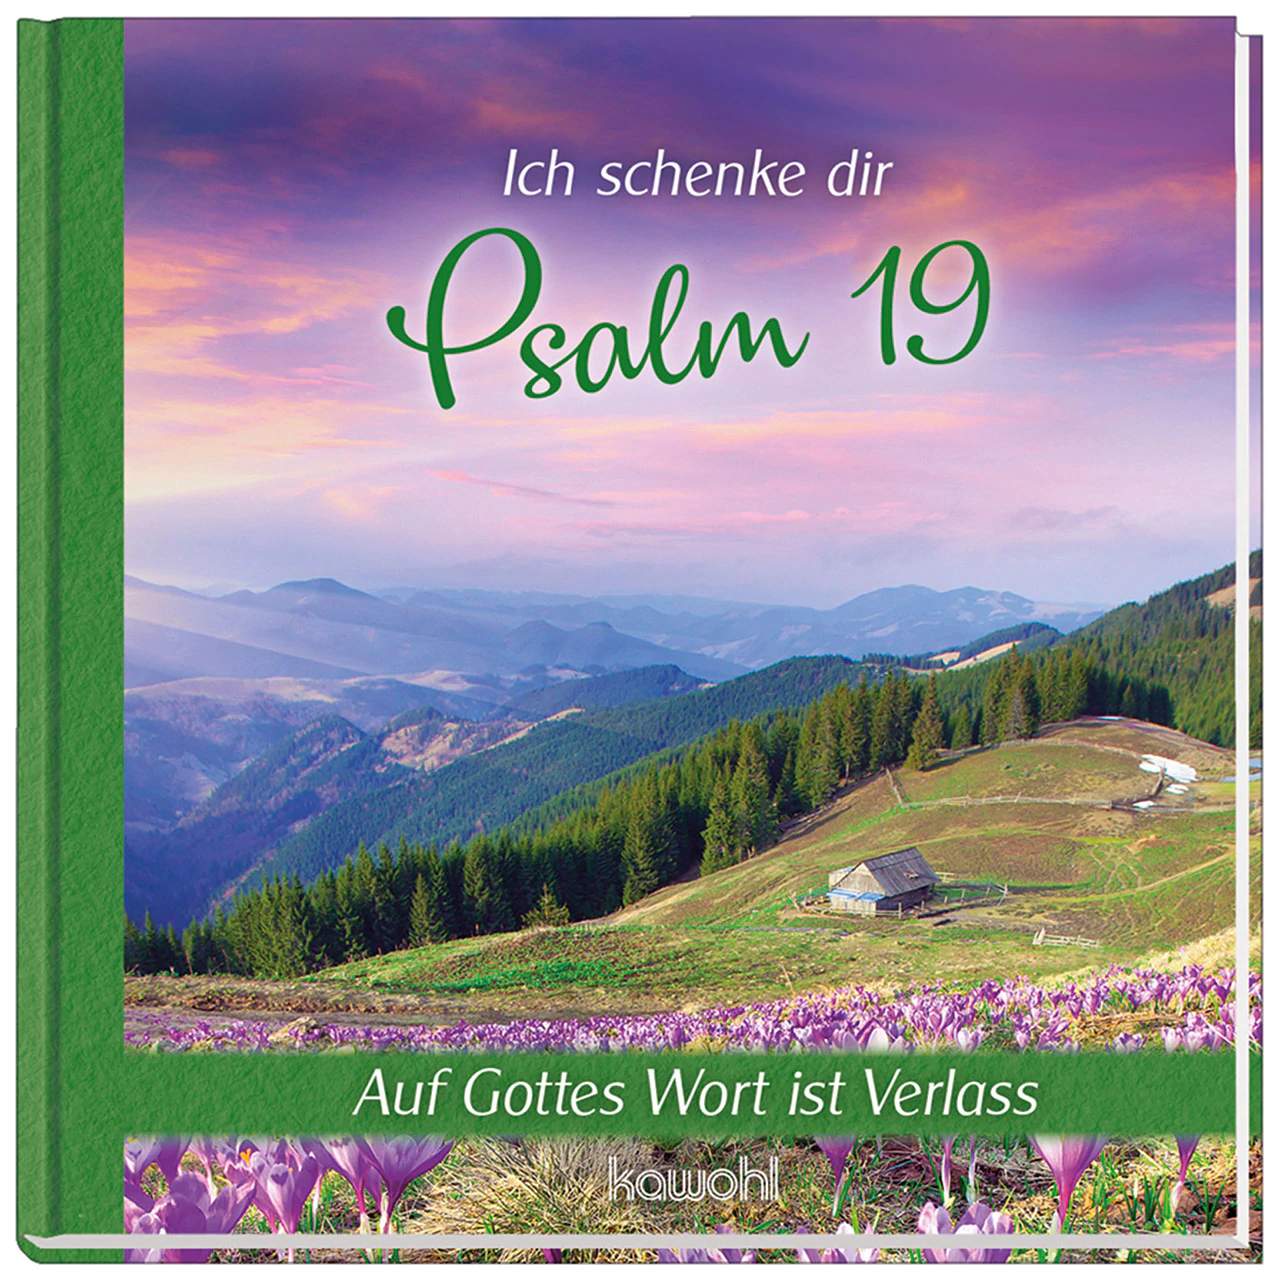 Ich schenke dir Psalm 19 - Auf Gottes Wort ist Verlass